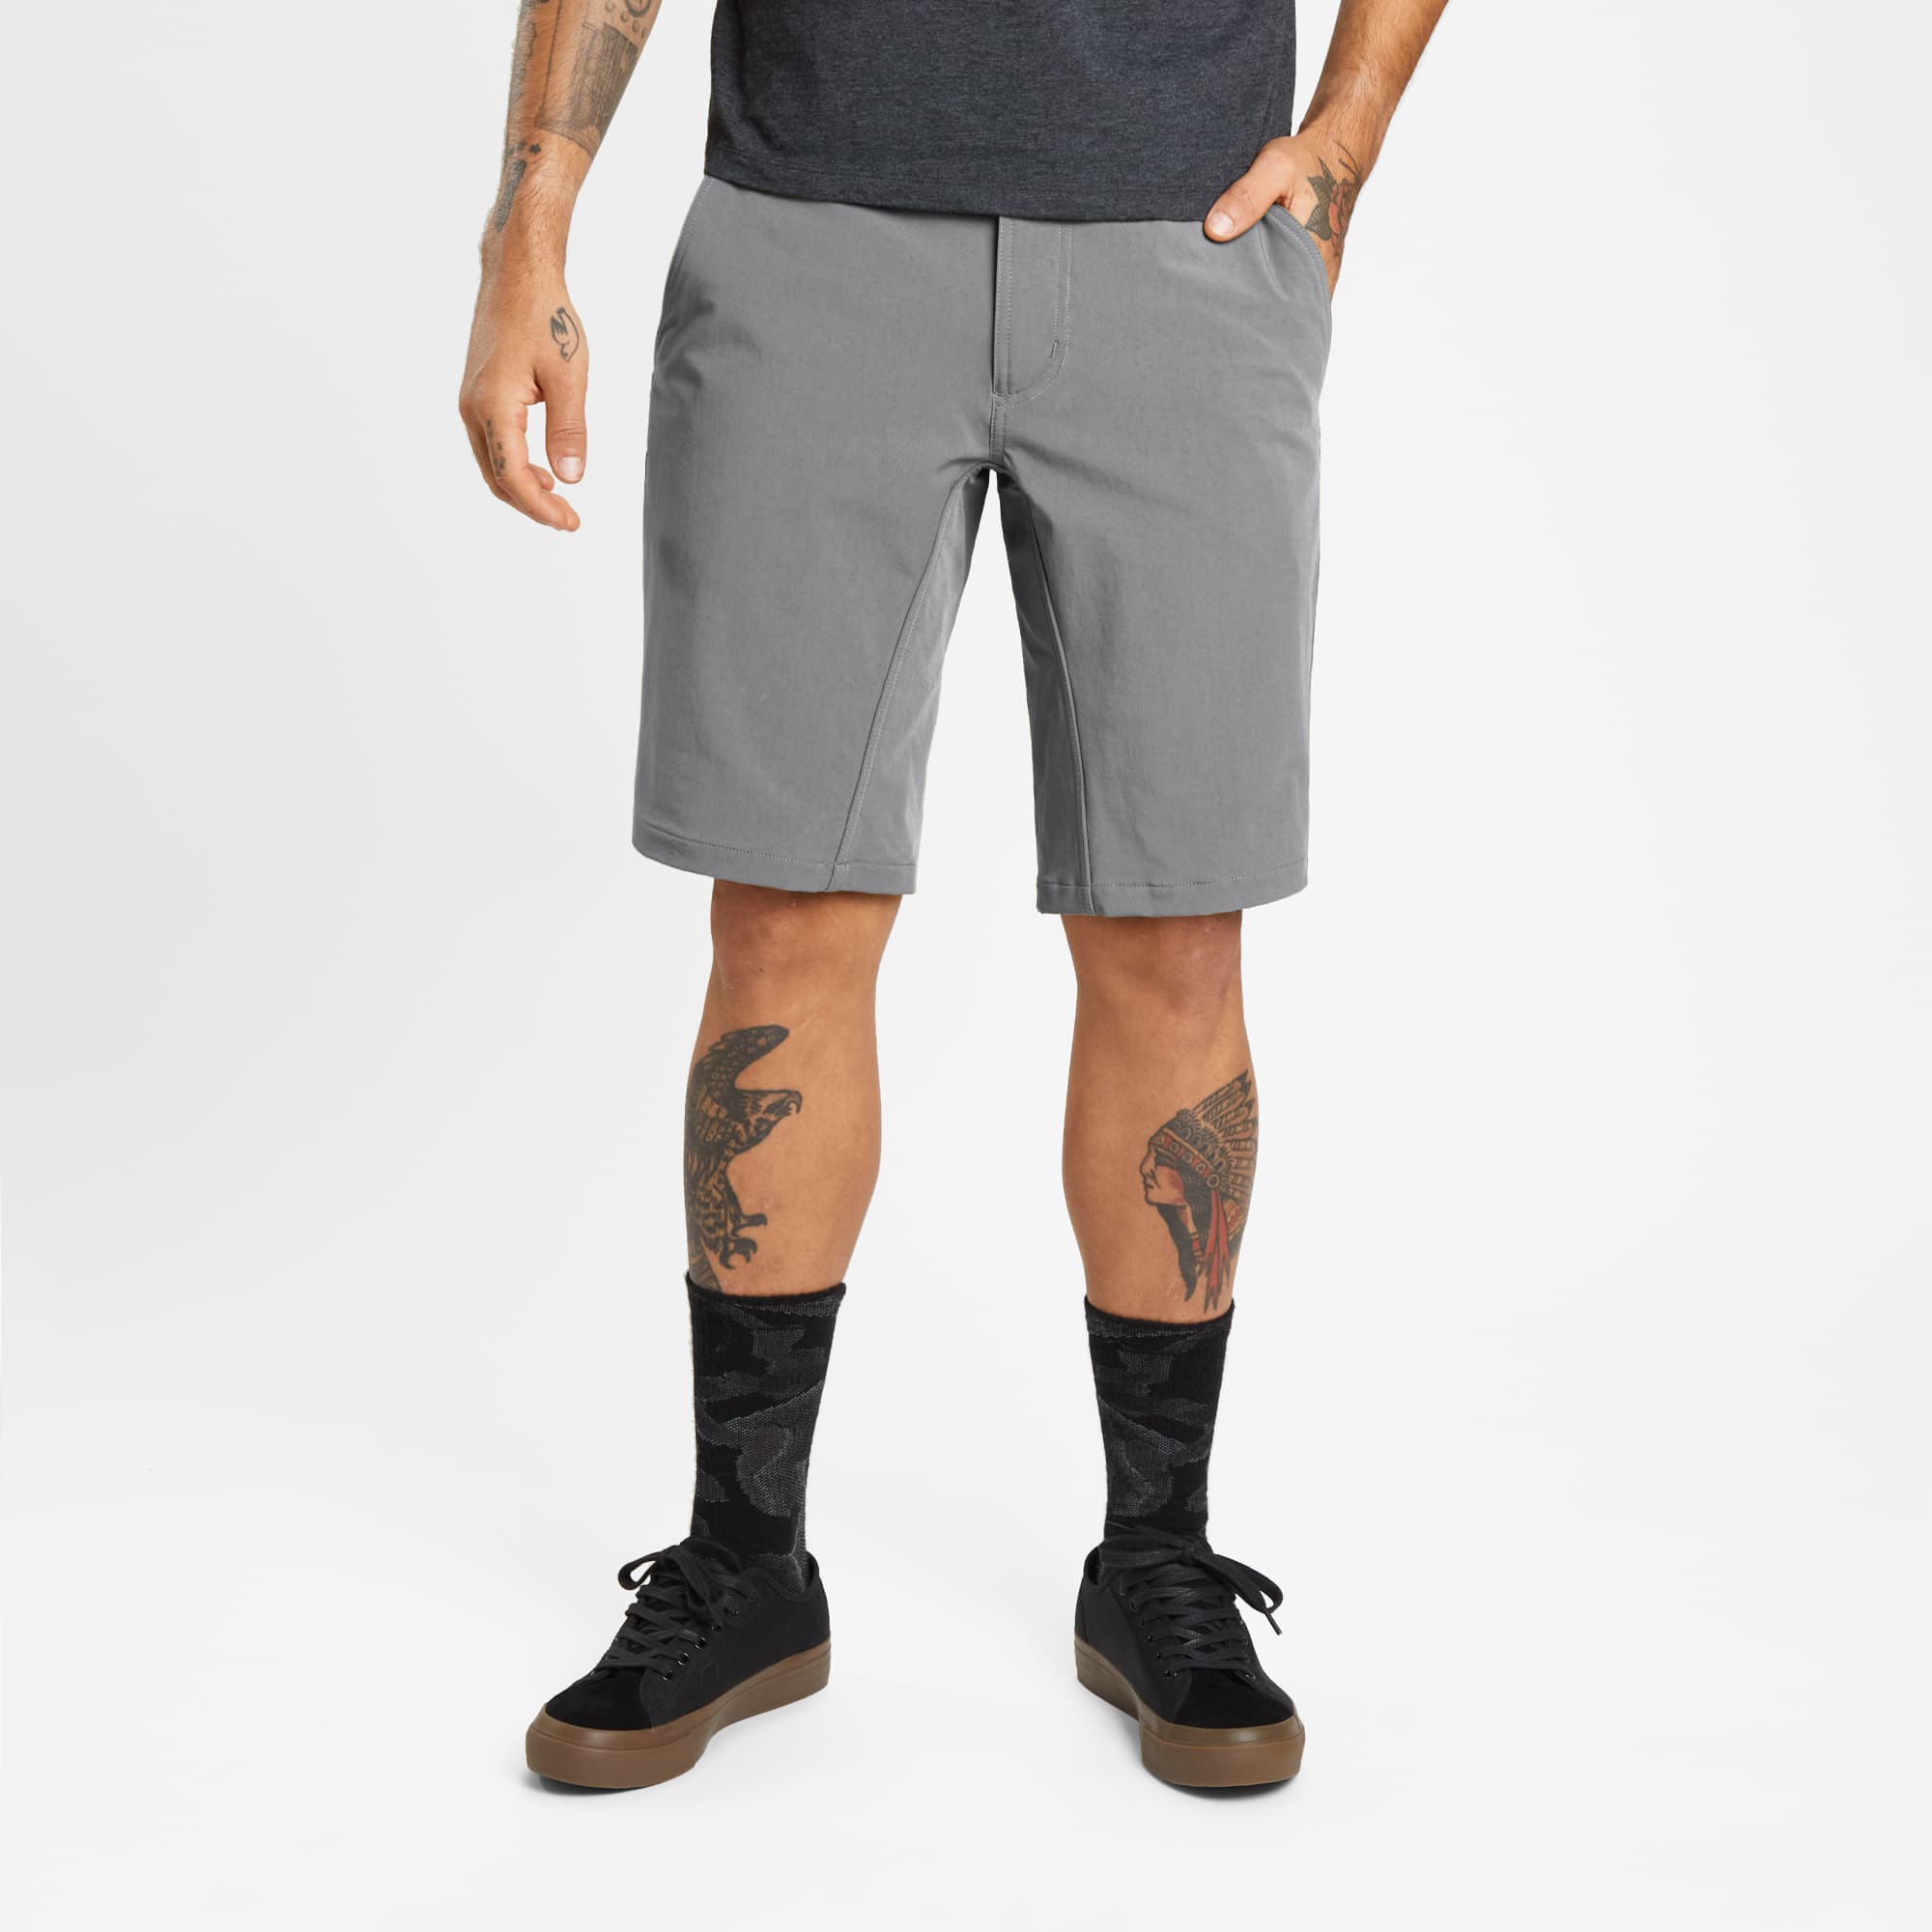 Men's Folsom tech biking Short in grey worn by a man #color_castle rock